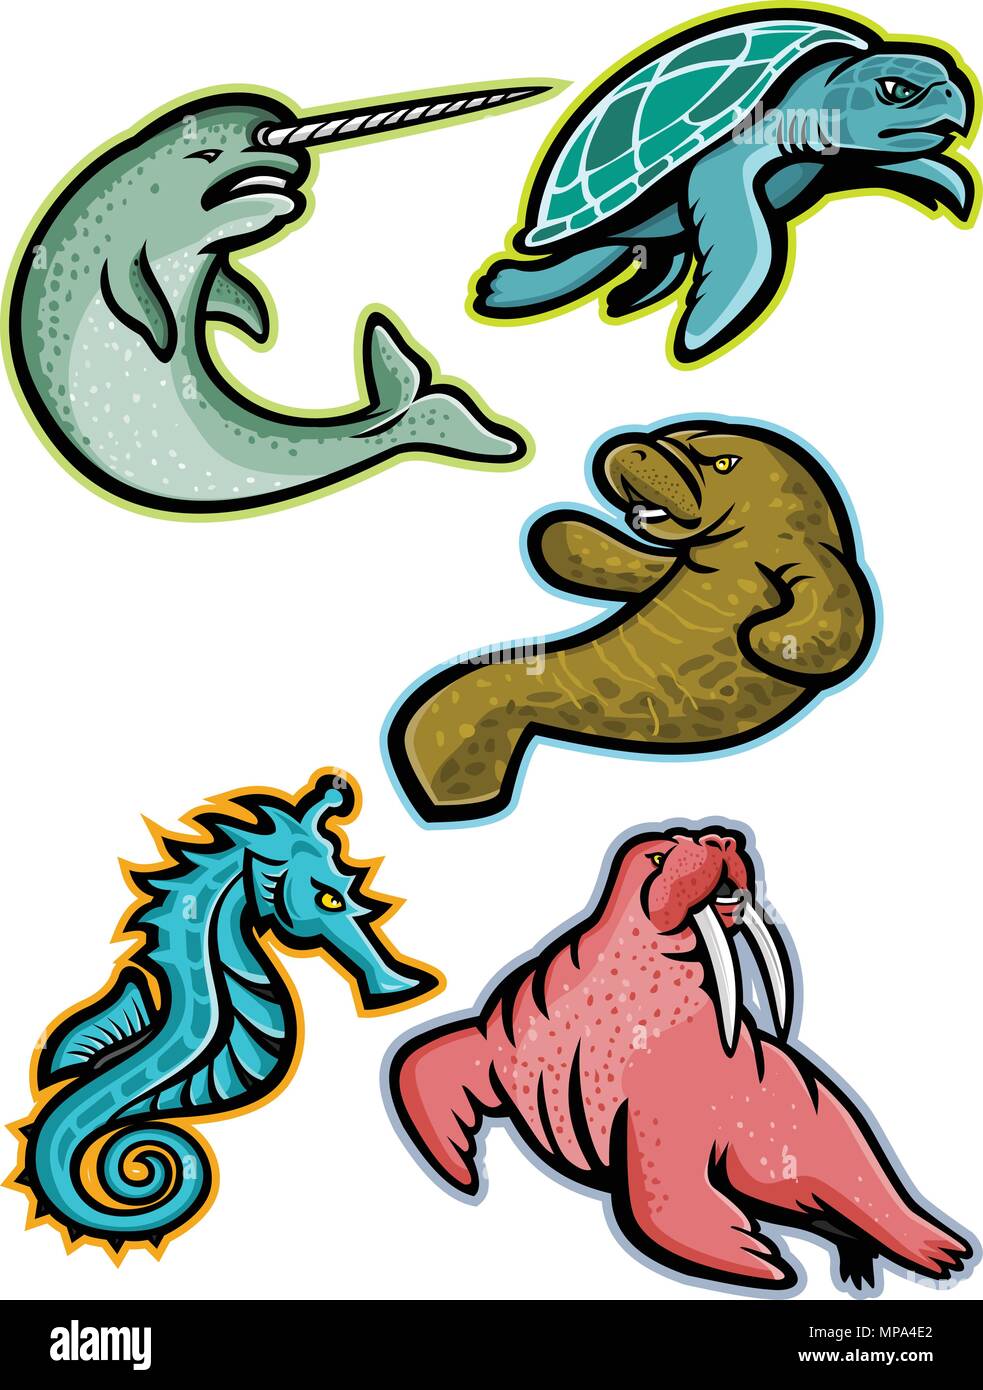 Icono de mascota ilustración conjunto de animales acuáticos y mamíferos marinos como el narval o narwhale ridley, tortugas marinas, el manatí o vaca marina, caballos de mar o s Ilustración del Vector